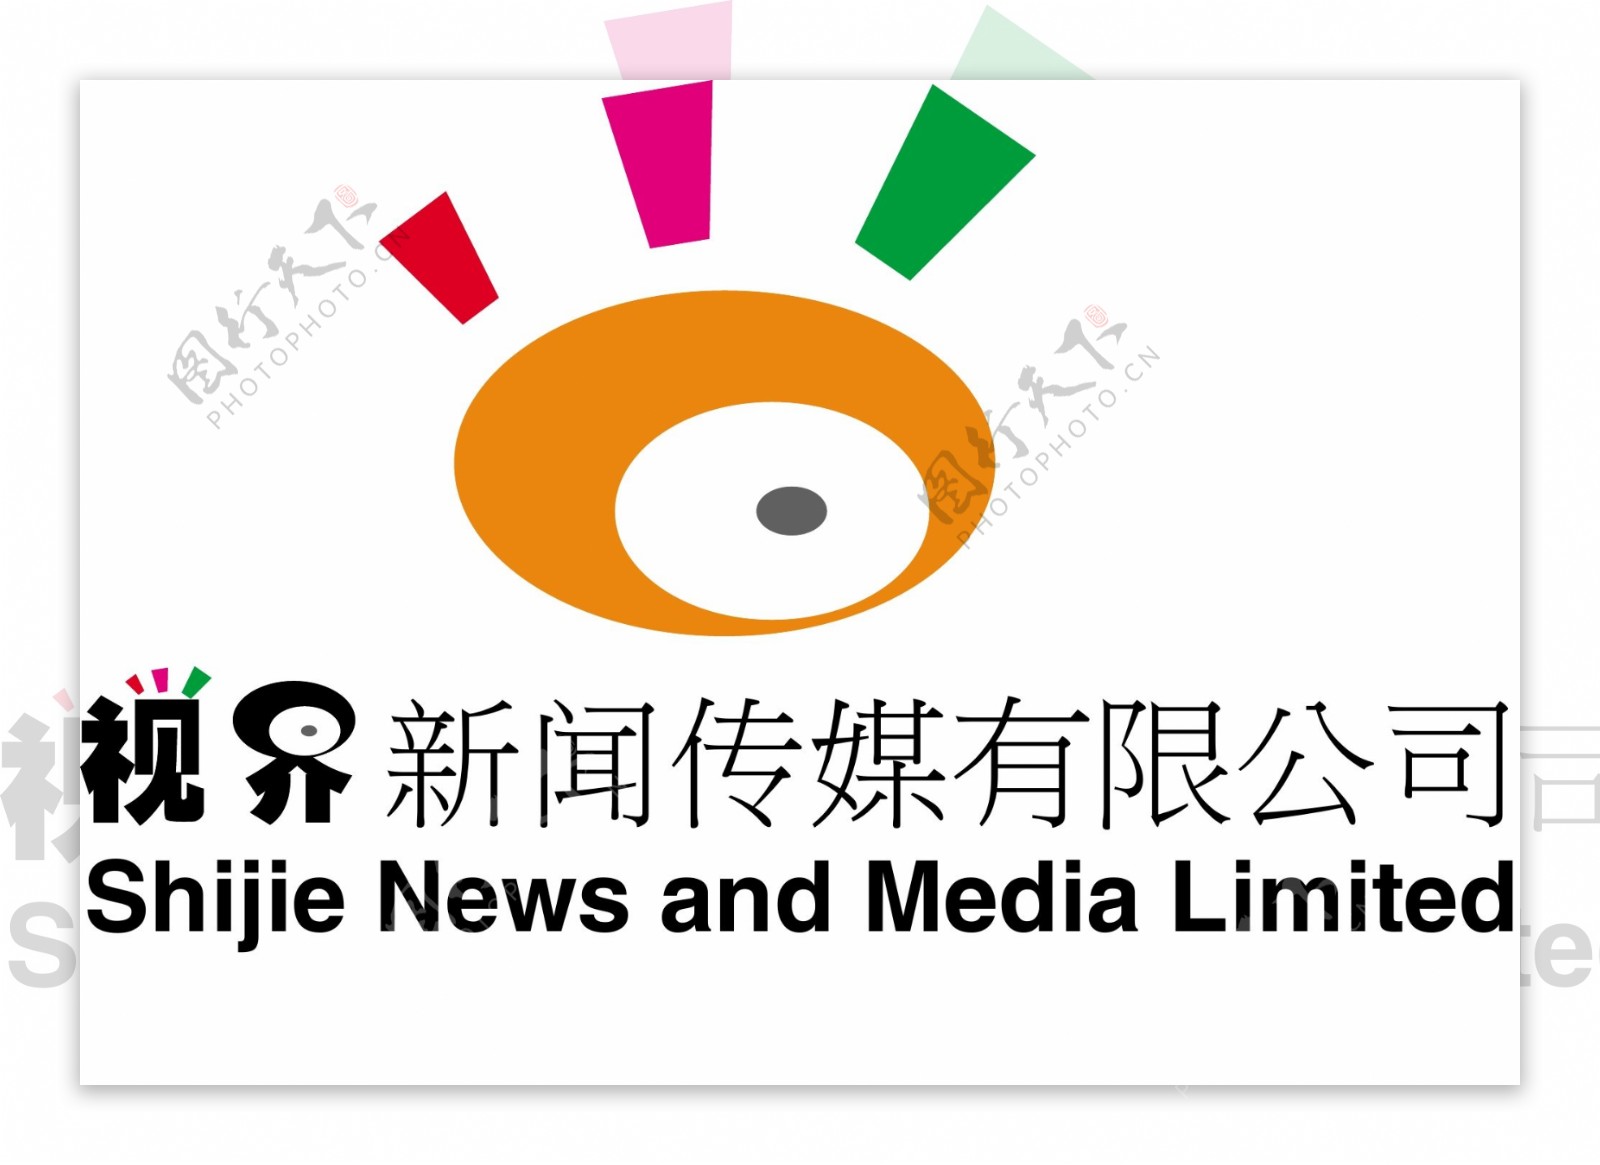 传媒logo图片